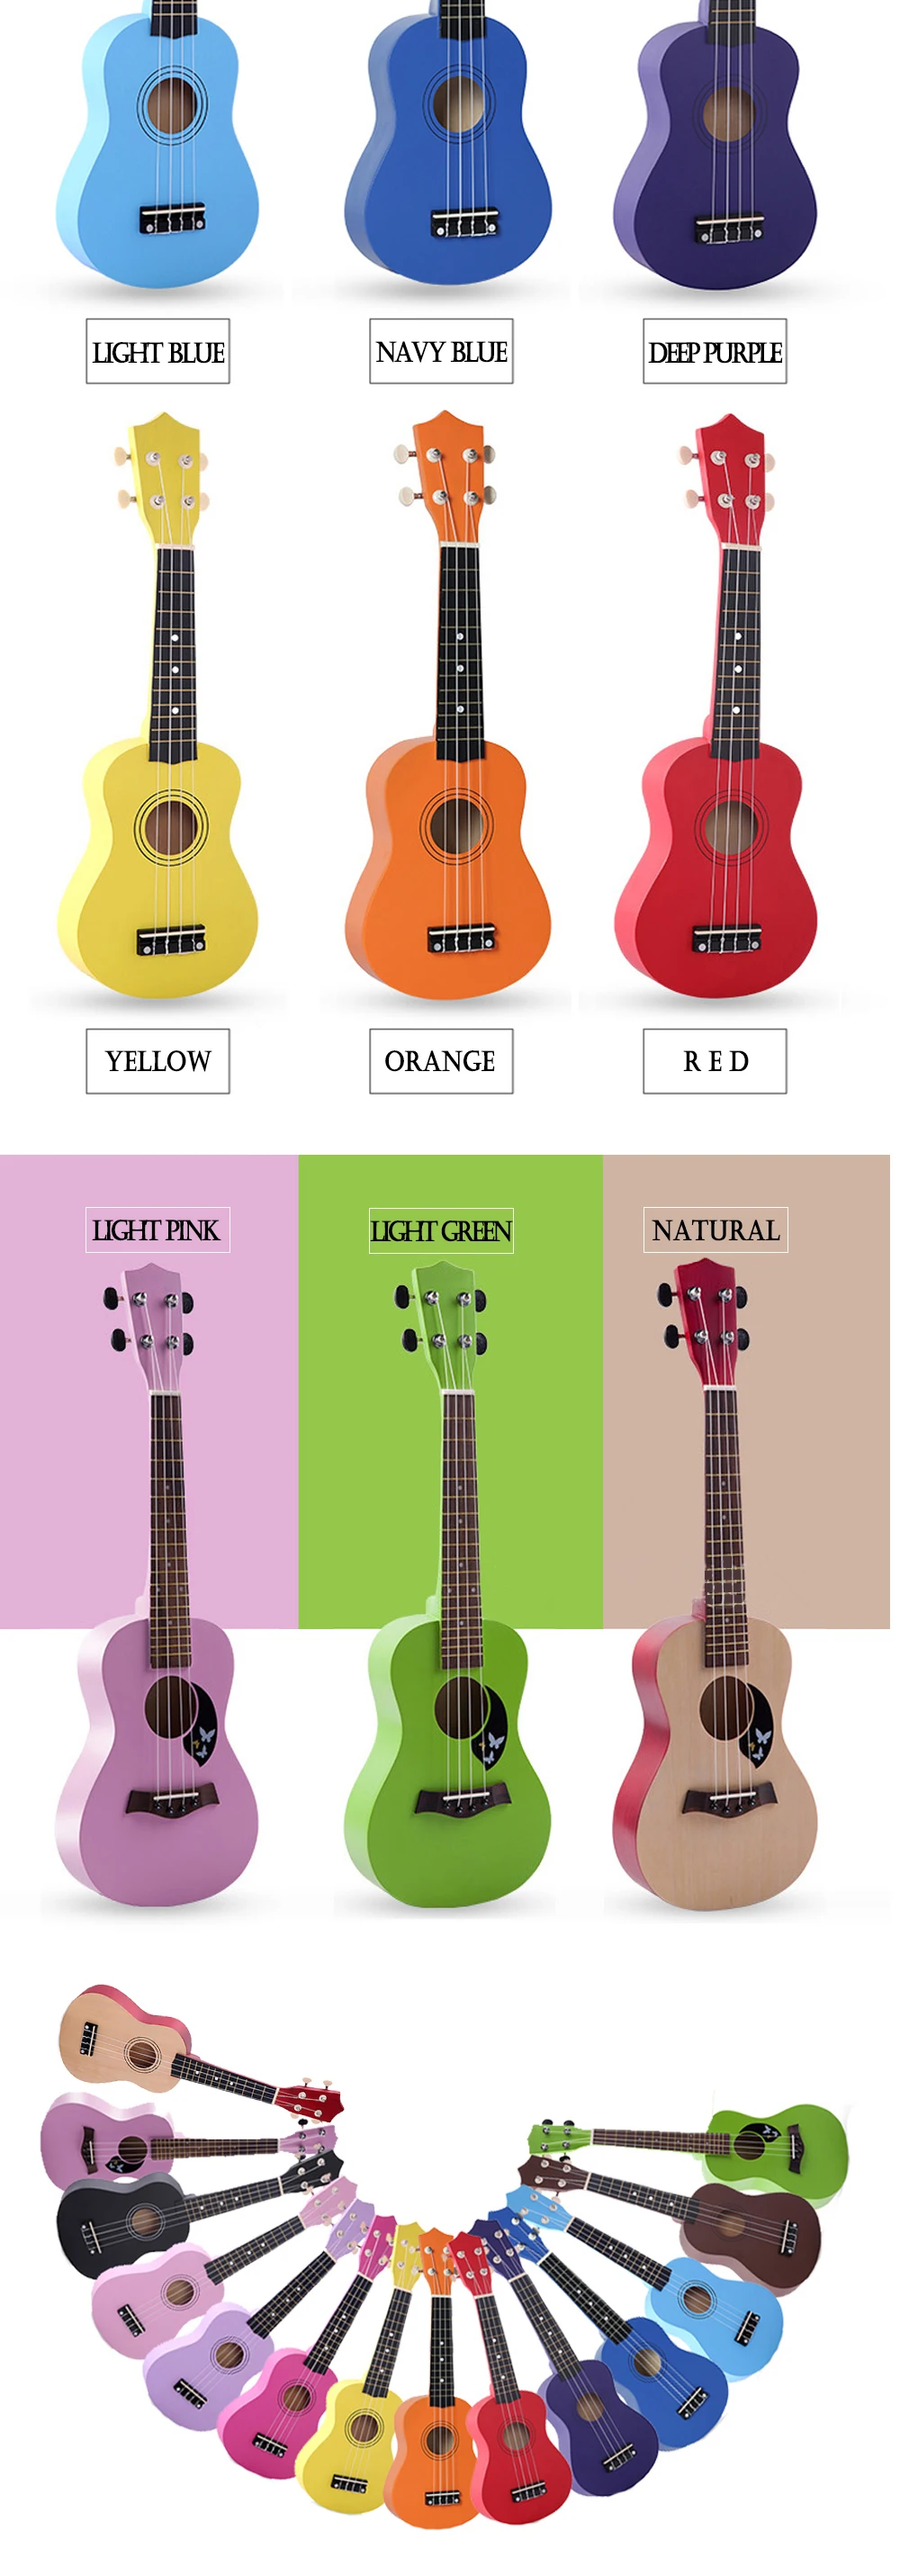 21 дюймов Гавайские гитары укулеле мини-гитары укулеле наборы сумка Капо ремень медиаторы комплект музыка для детей подарок 14 цветов UK001A